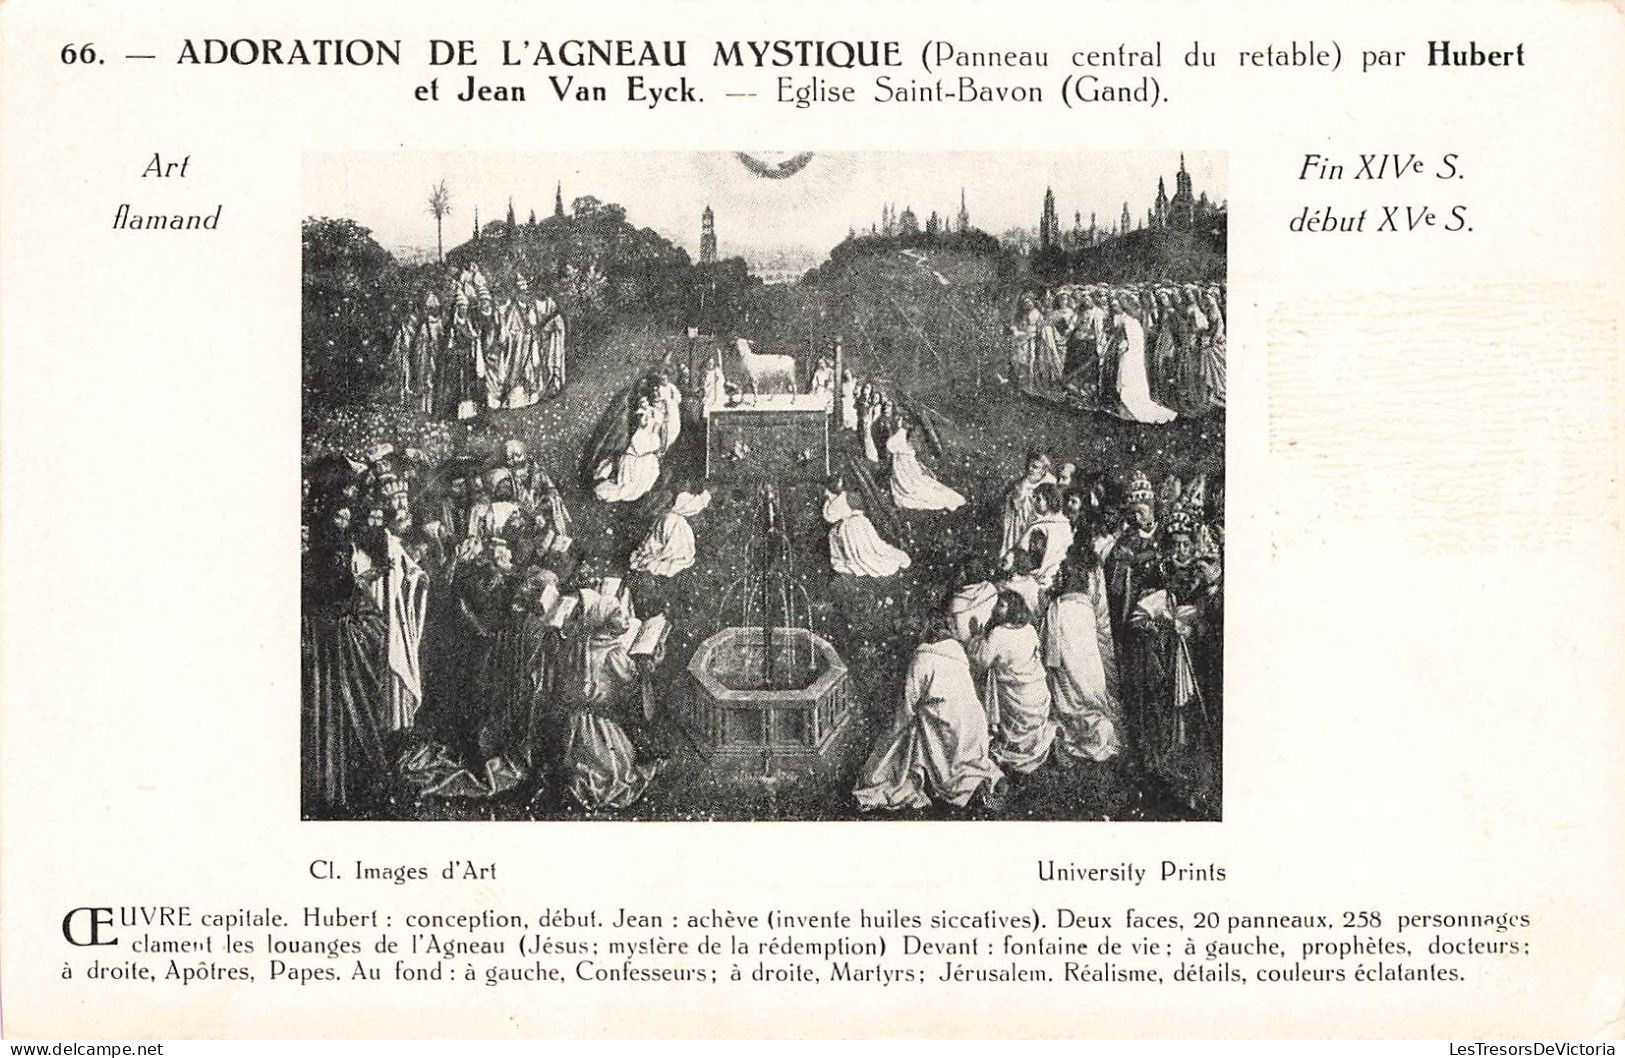 BELGIQUE - Gand - Adoration De L'Agneau Mystique - Hubert Et Jean Van Eyck - Eglise Saint Bavon - Carte Postale Ancienne - Gent